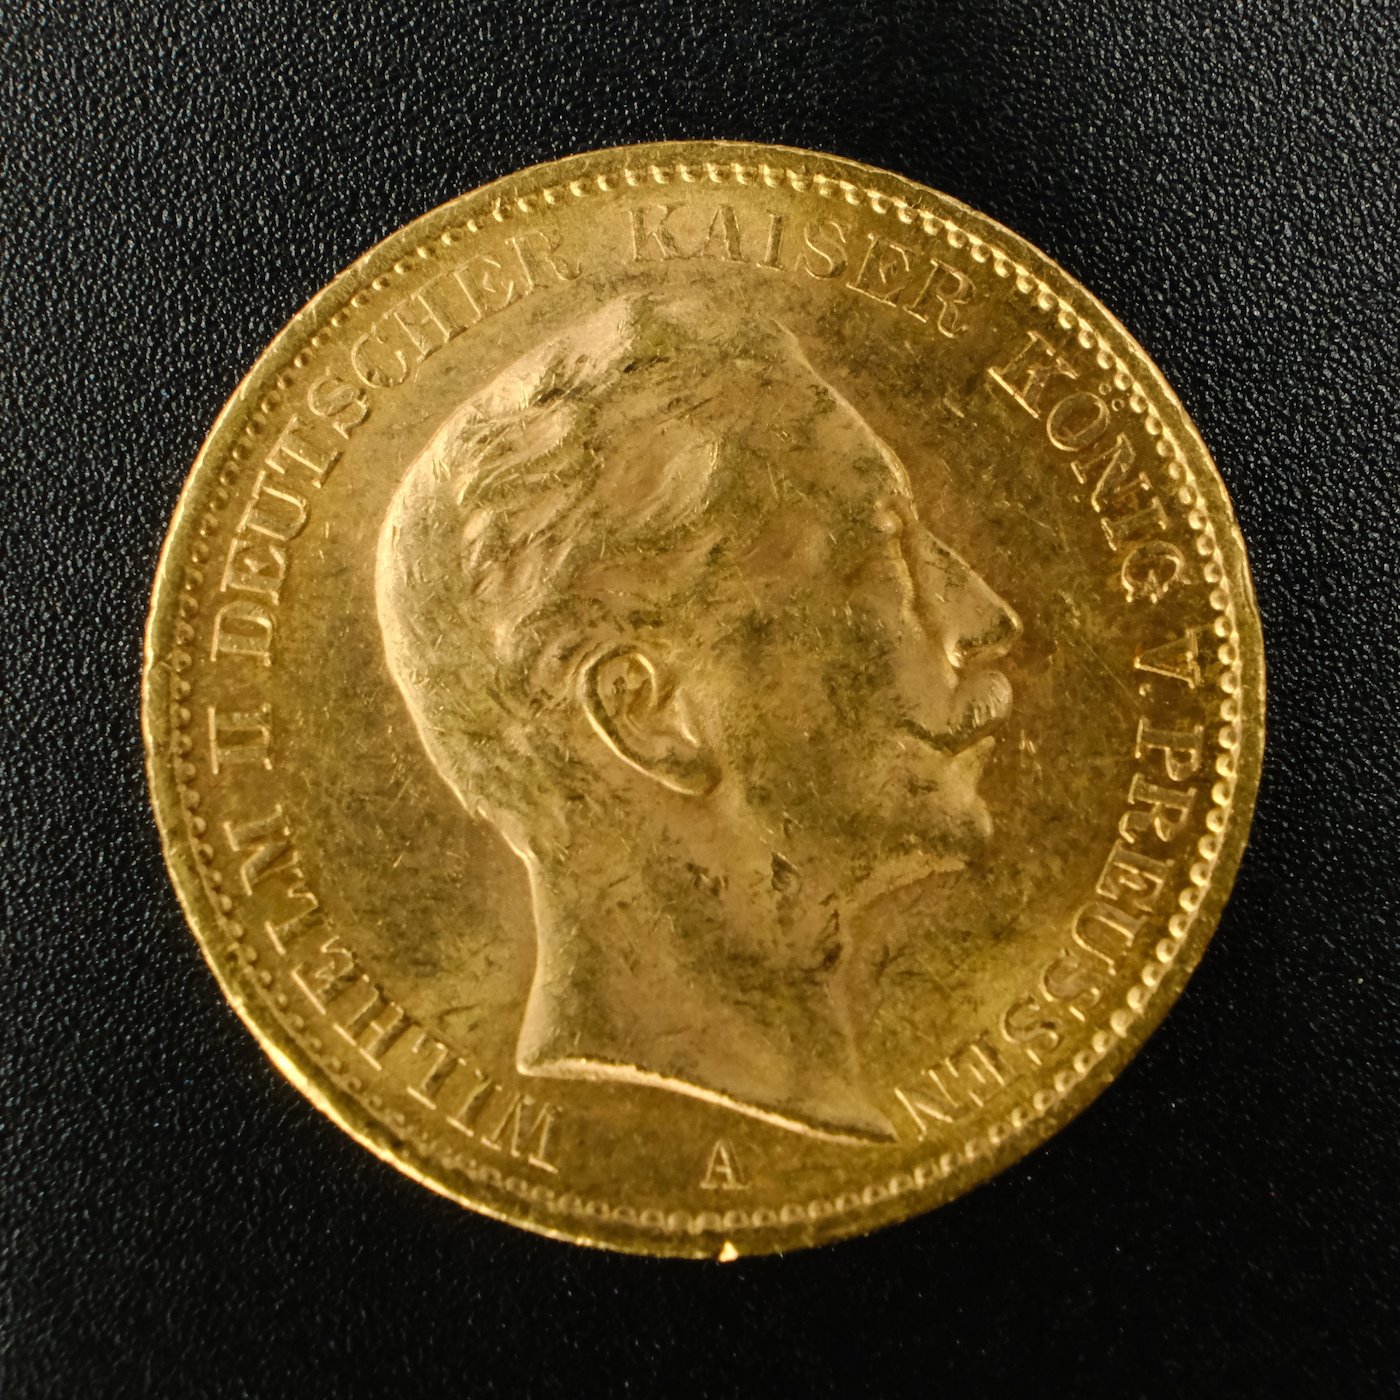 Mince - Zlatá 20 Marka 1910 A císař Wilhelm II., zlato 900/1000, hmotnost hrubá 7,965g